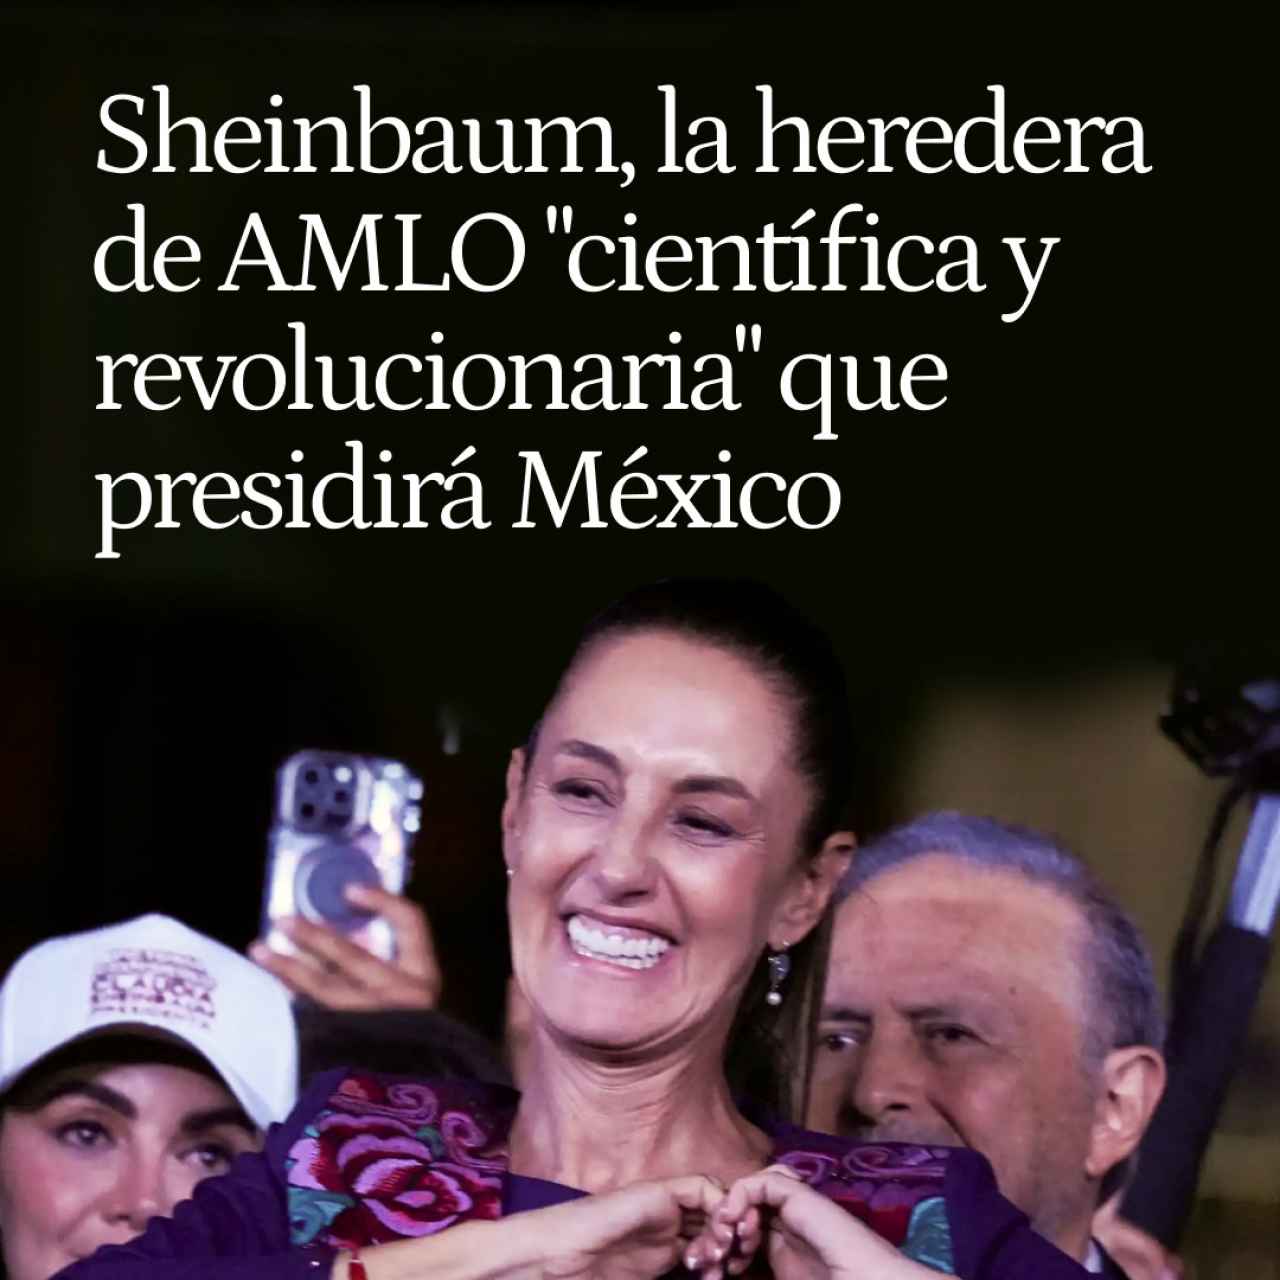 Sheinbaum, la heredera de AMLO "científica y revolucionaria" que presidirá México